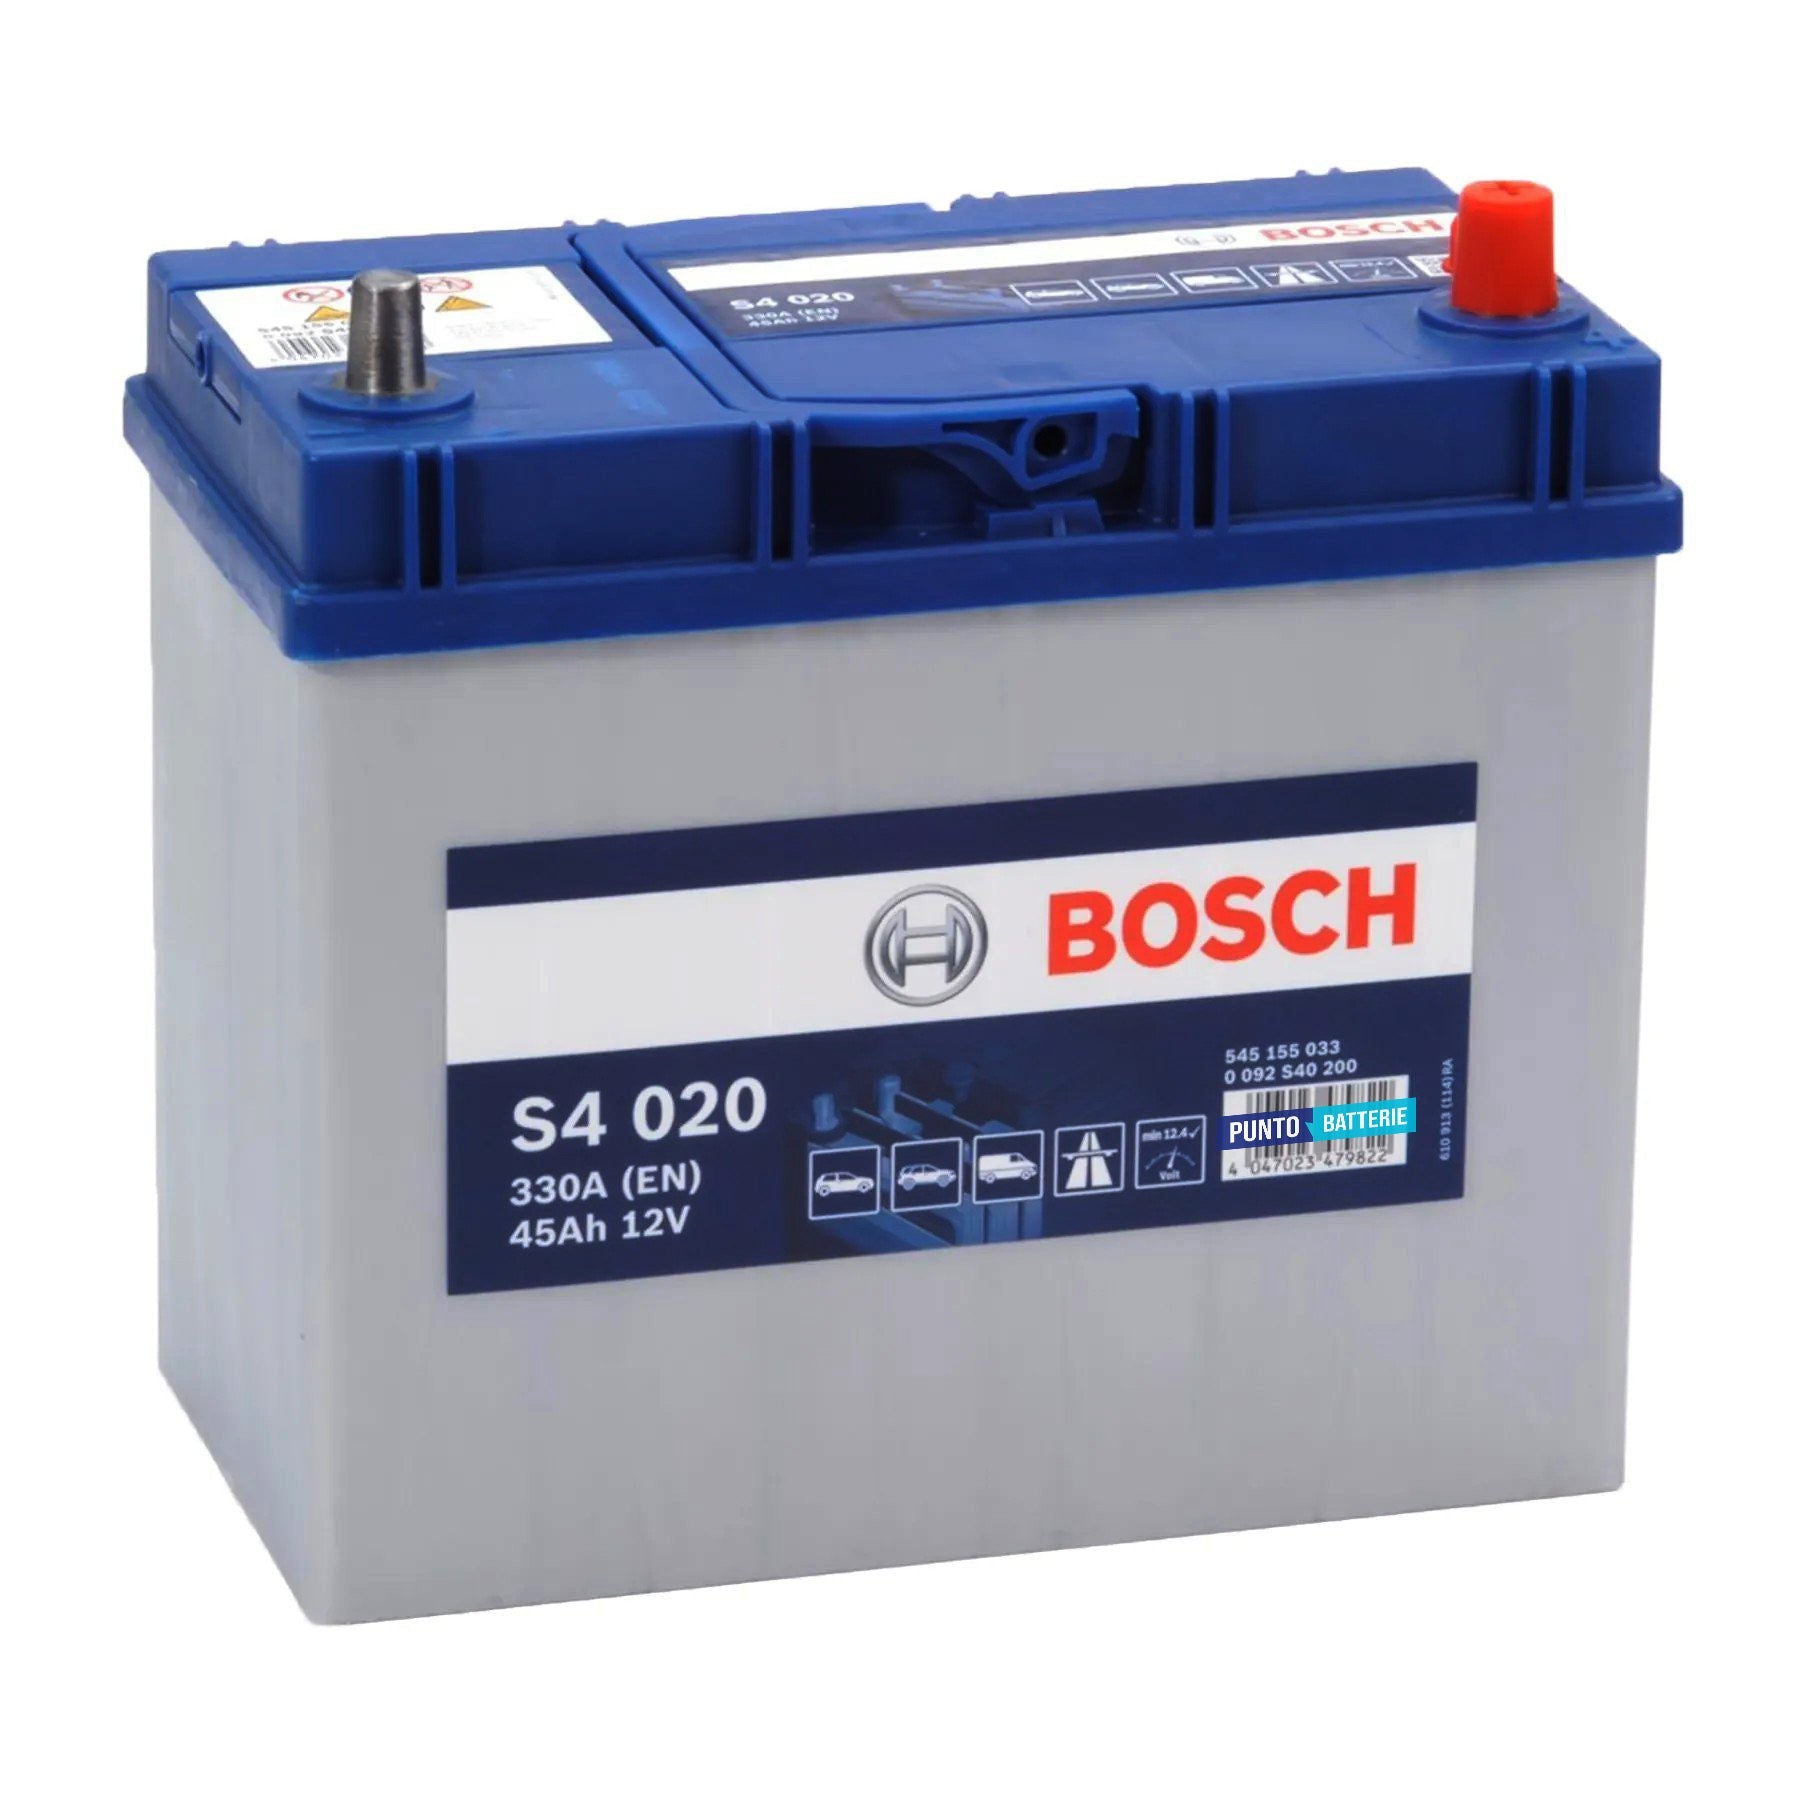 Batteria originale Bosch S4 S4 020, dimensioni 238 x 129 x 227, polo positivo a destra, 12 volt, 45 amperora, 330 ampere. Batteria per auto e veicoli leggeri.